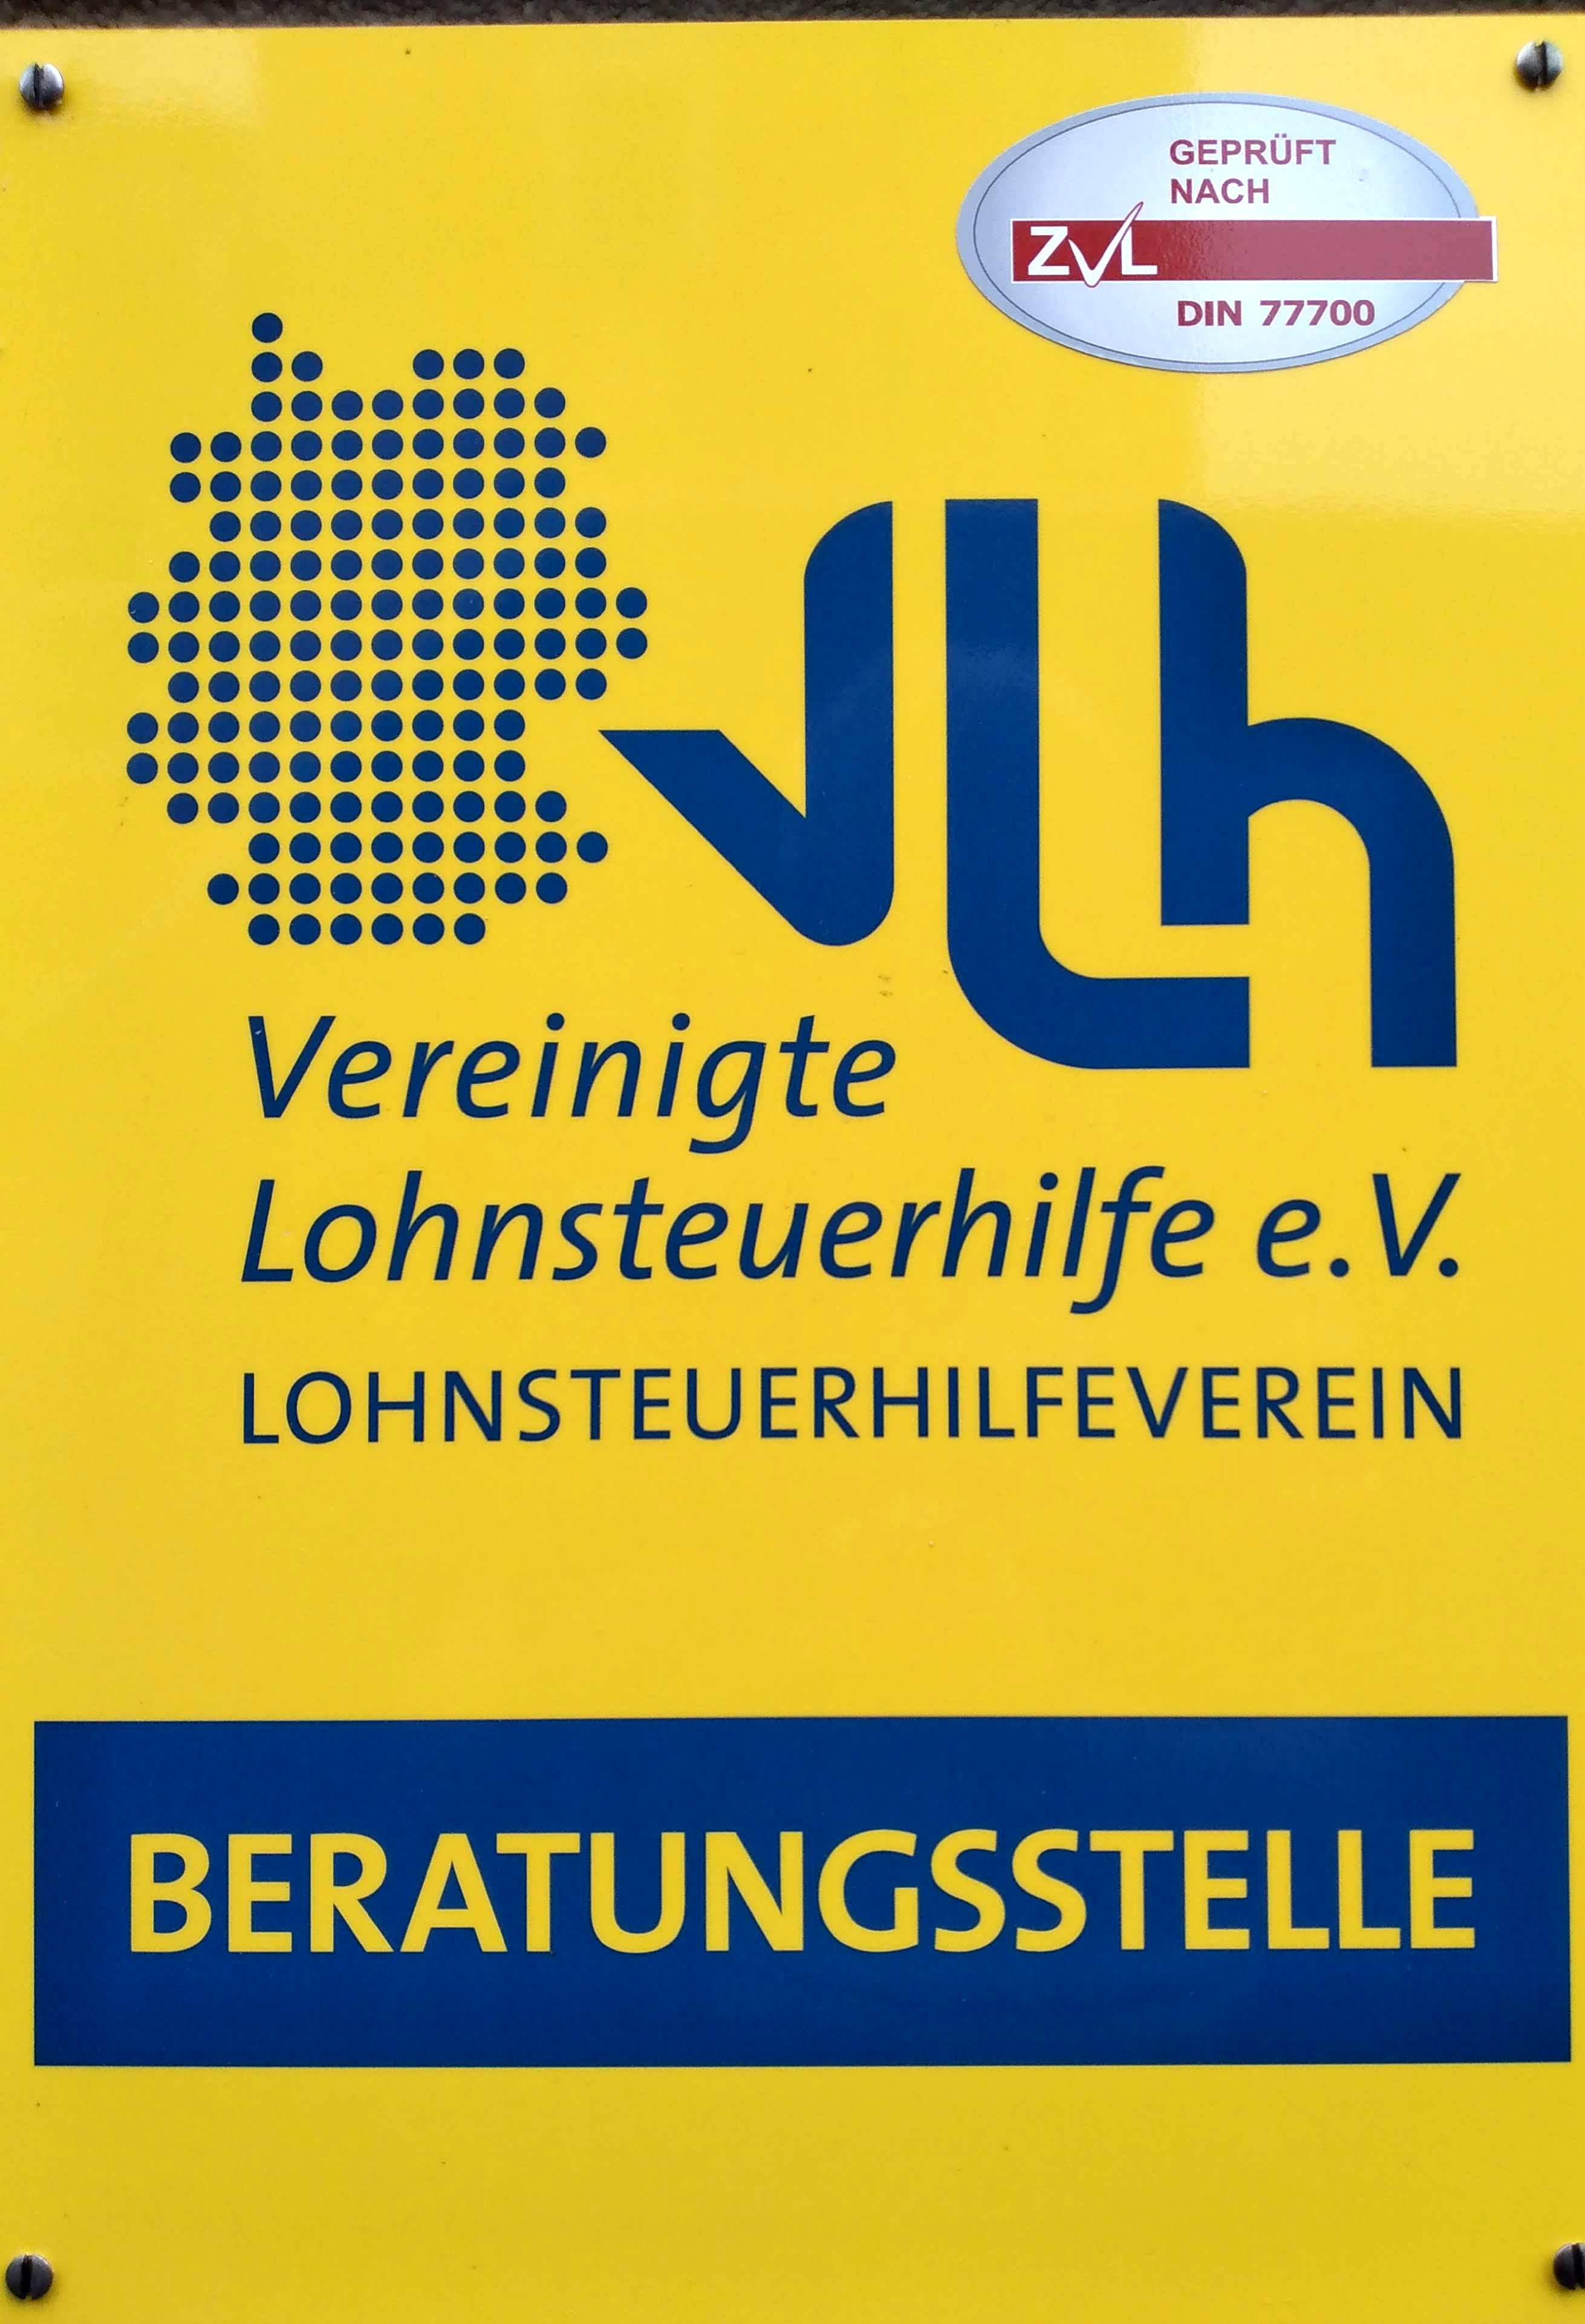 Schild des Lohnsteuerhilfevereins (VLH)